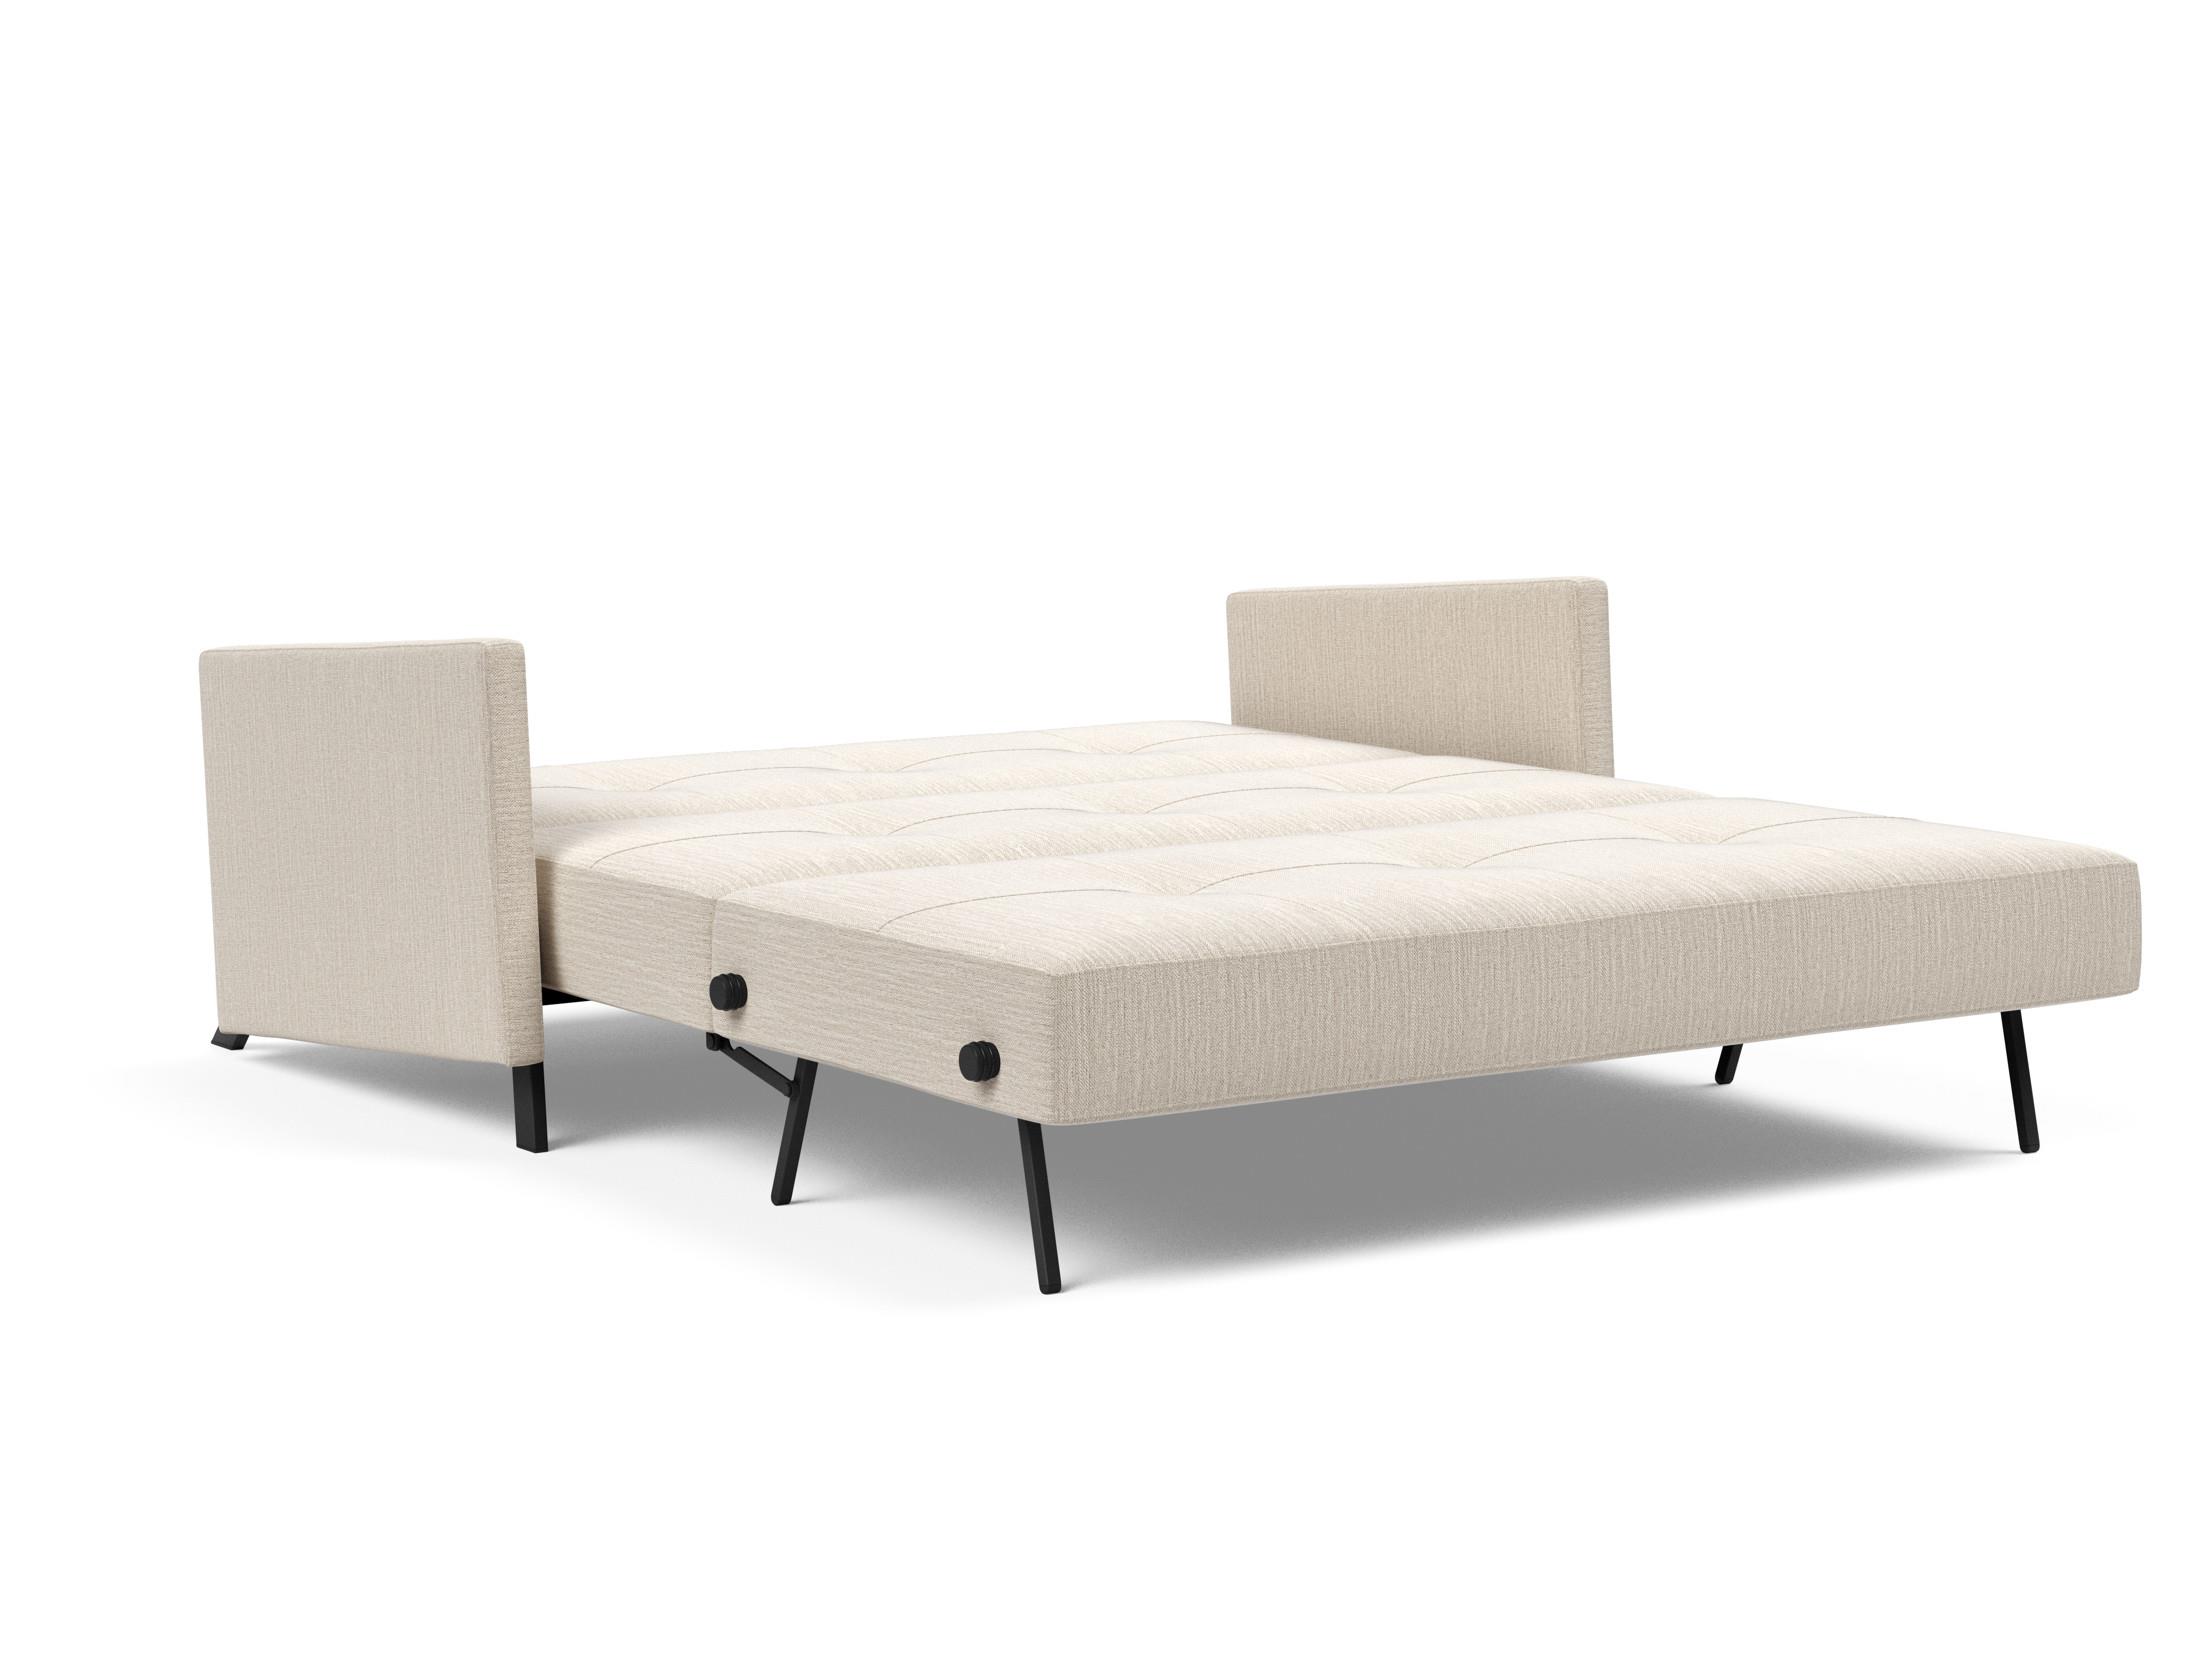 Кресло-кровать Cubed 90 Innovation. Диван sofa140 200. Кровать кубик. Кровать Cube Design.